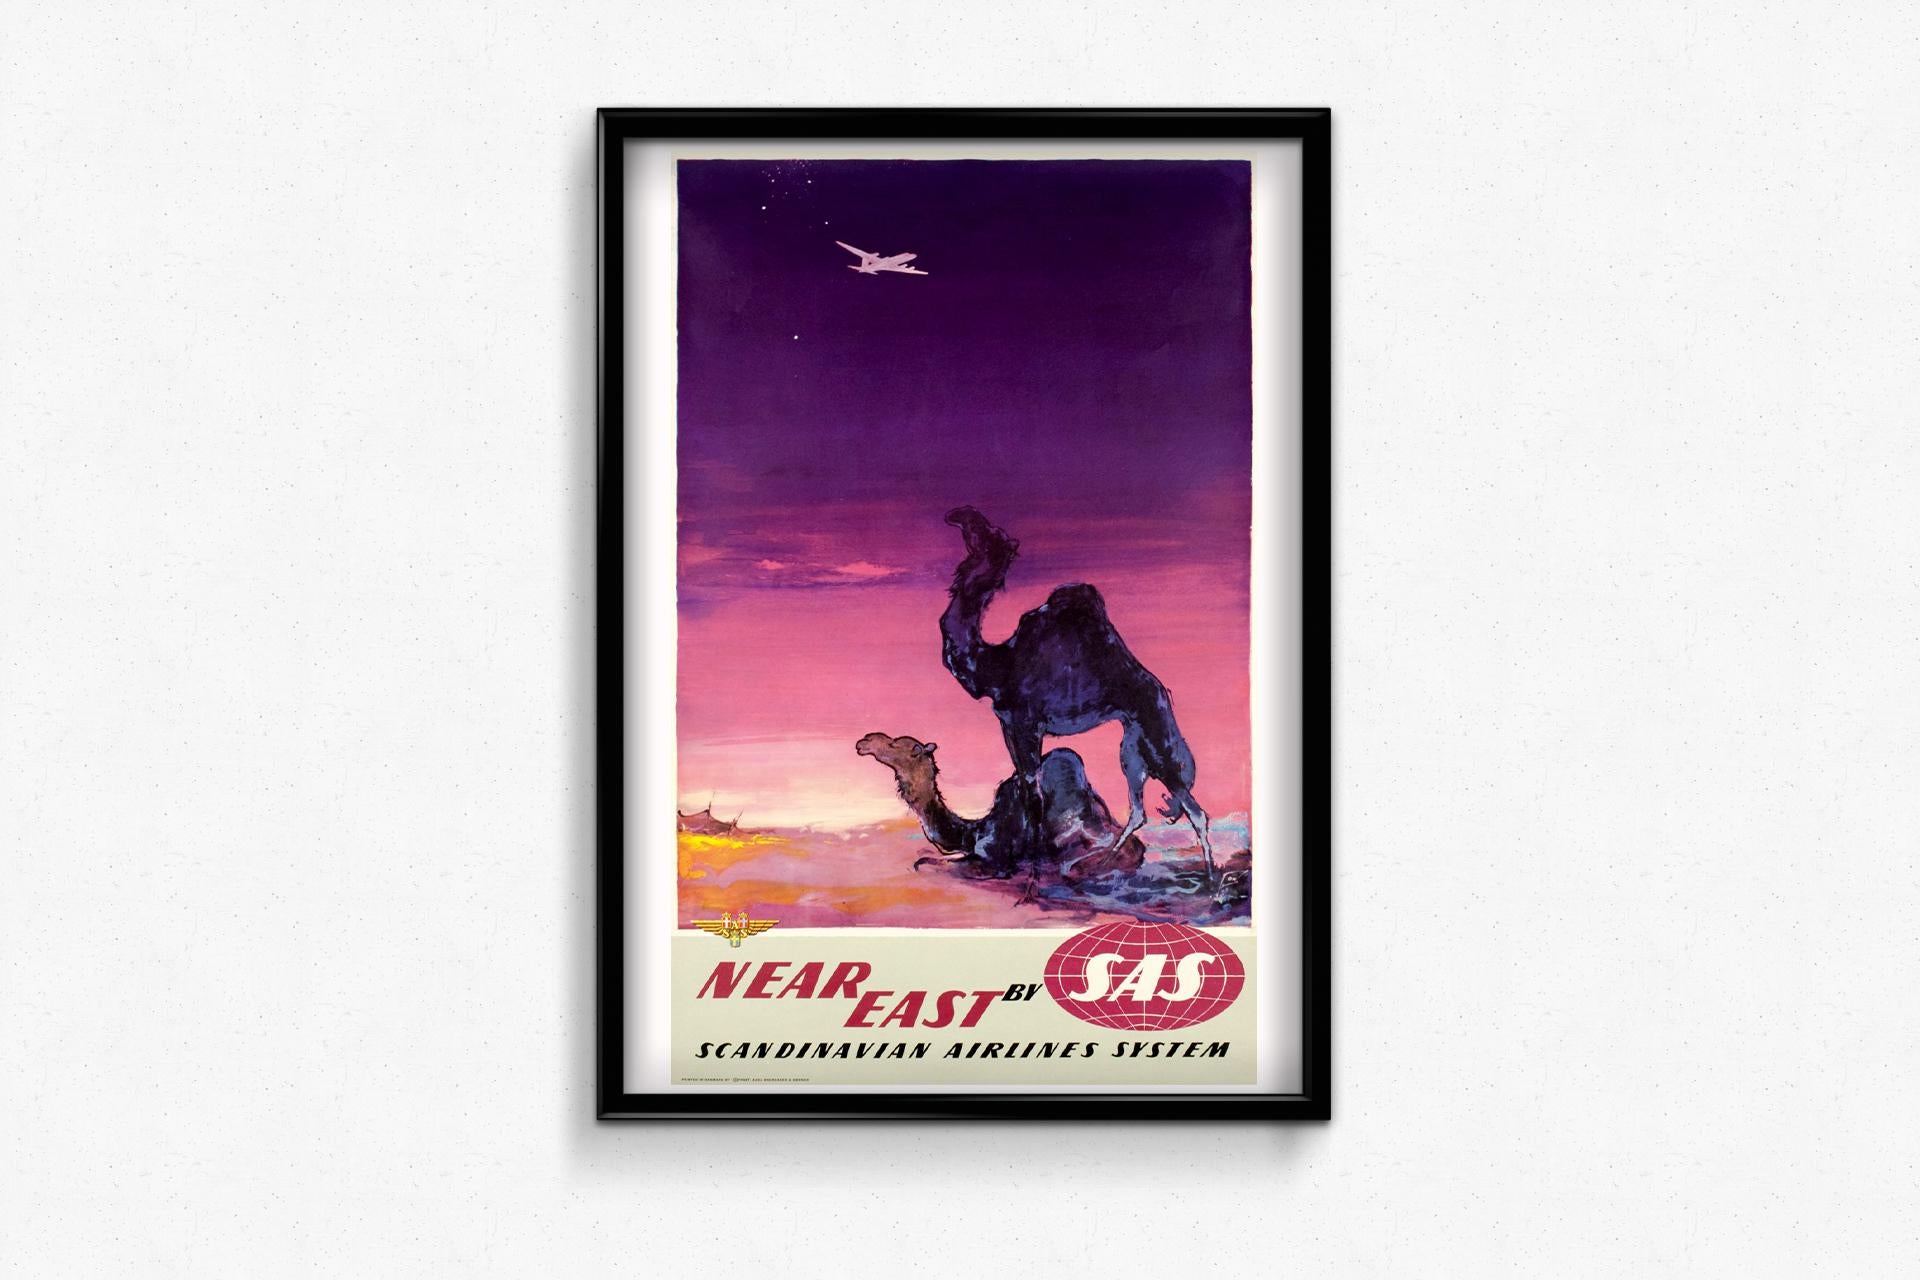 Wunderschönes Plakat von Otto Nielson in prächtigen Farben, 1950 für SAS (Scandinavian Airlines System) hergestellt.

Ein großartiges Plakat zum Thema Fluggesellschaften, entworfen von Otto Nielsen 🇩🇰 (1916-2000) für Scandinavian Airlines System,